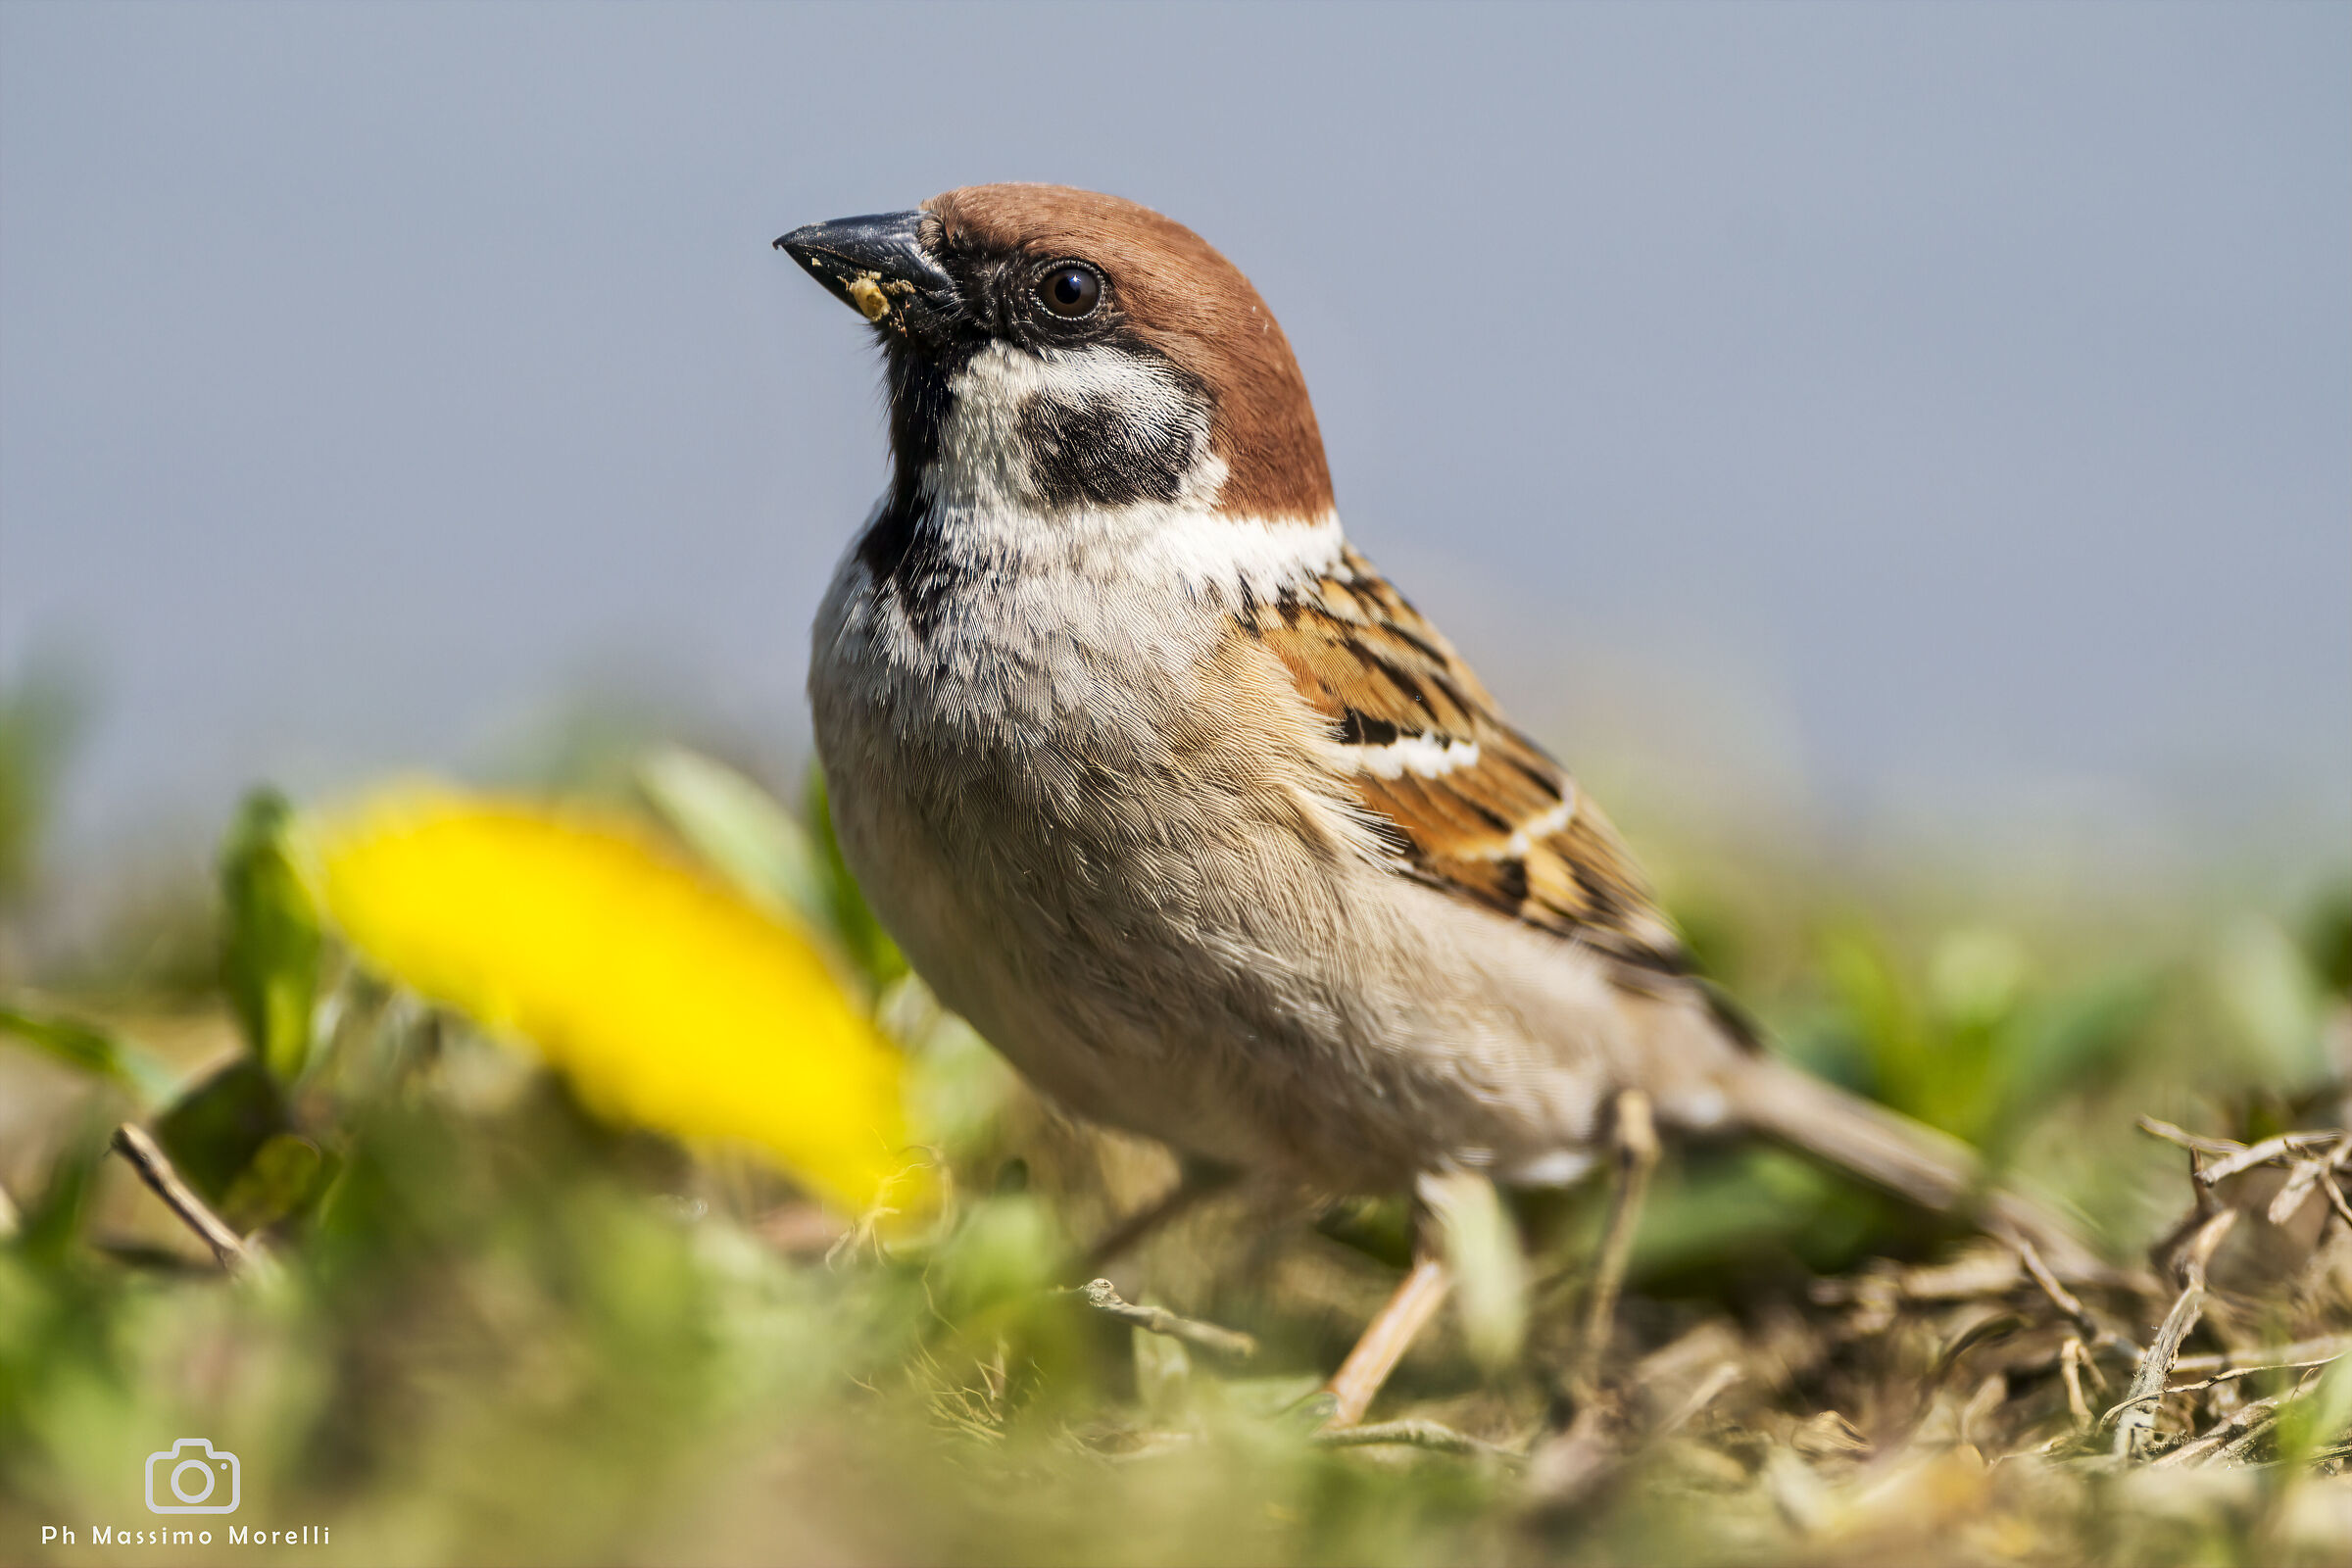 The Sparrow...